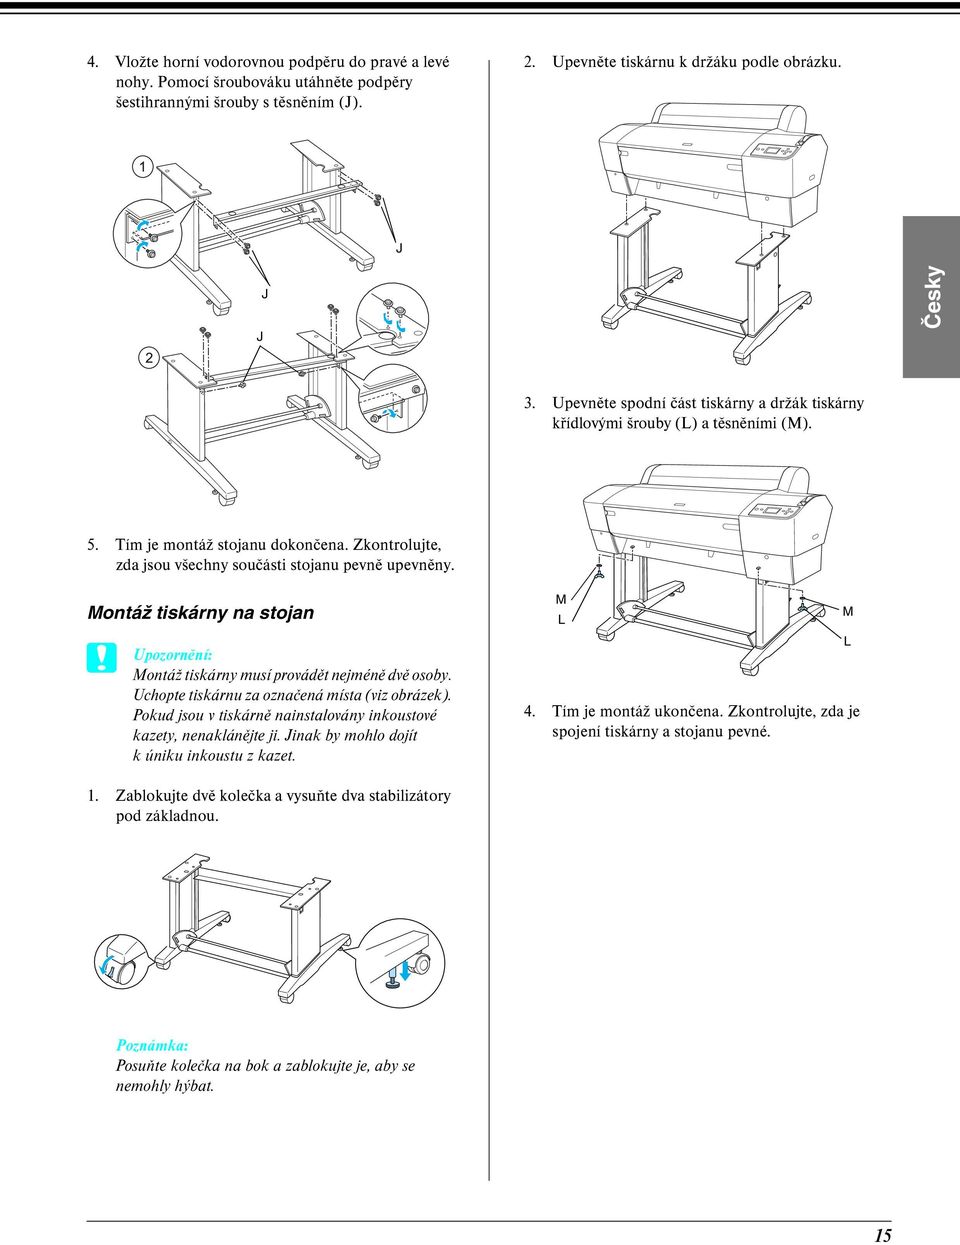 Montáž tiskárny na stojan Montáž tiskárny musí provádět nejméně dvě osoby. Uchopte tiskárnu za označená místa (viz obrázek). Pokud jsou v tiskárně nainstalovány inkoustové kazety, nenaklánějte ji.